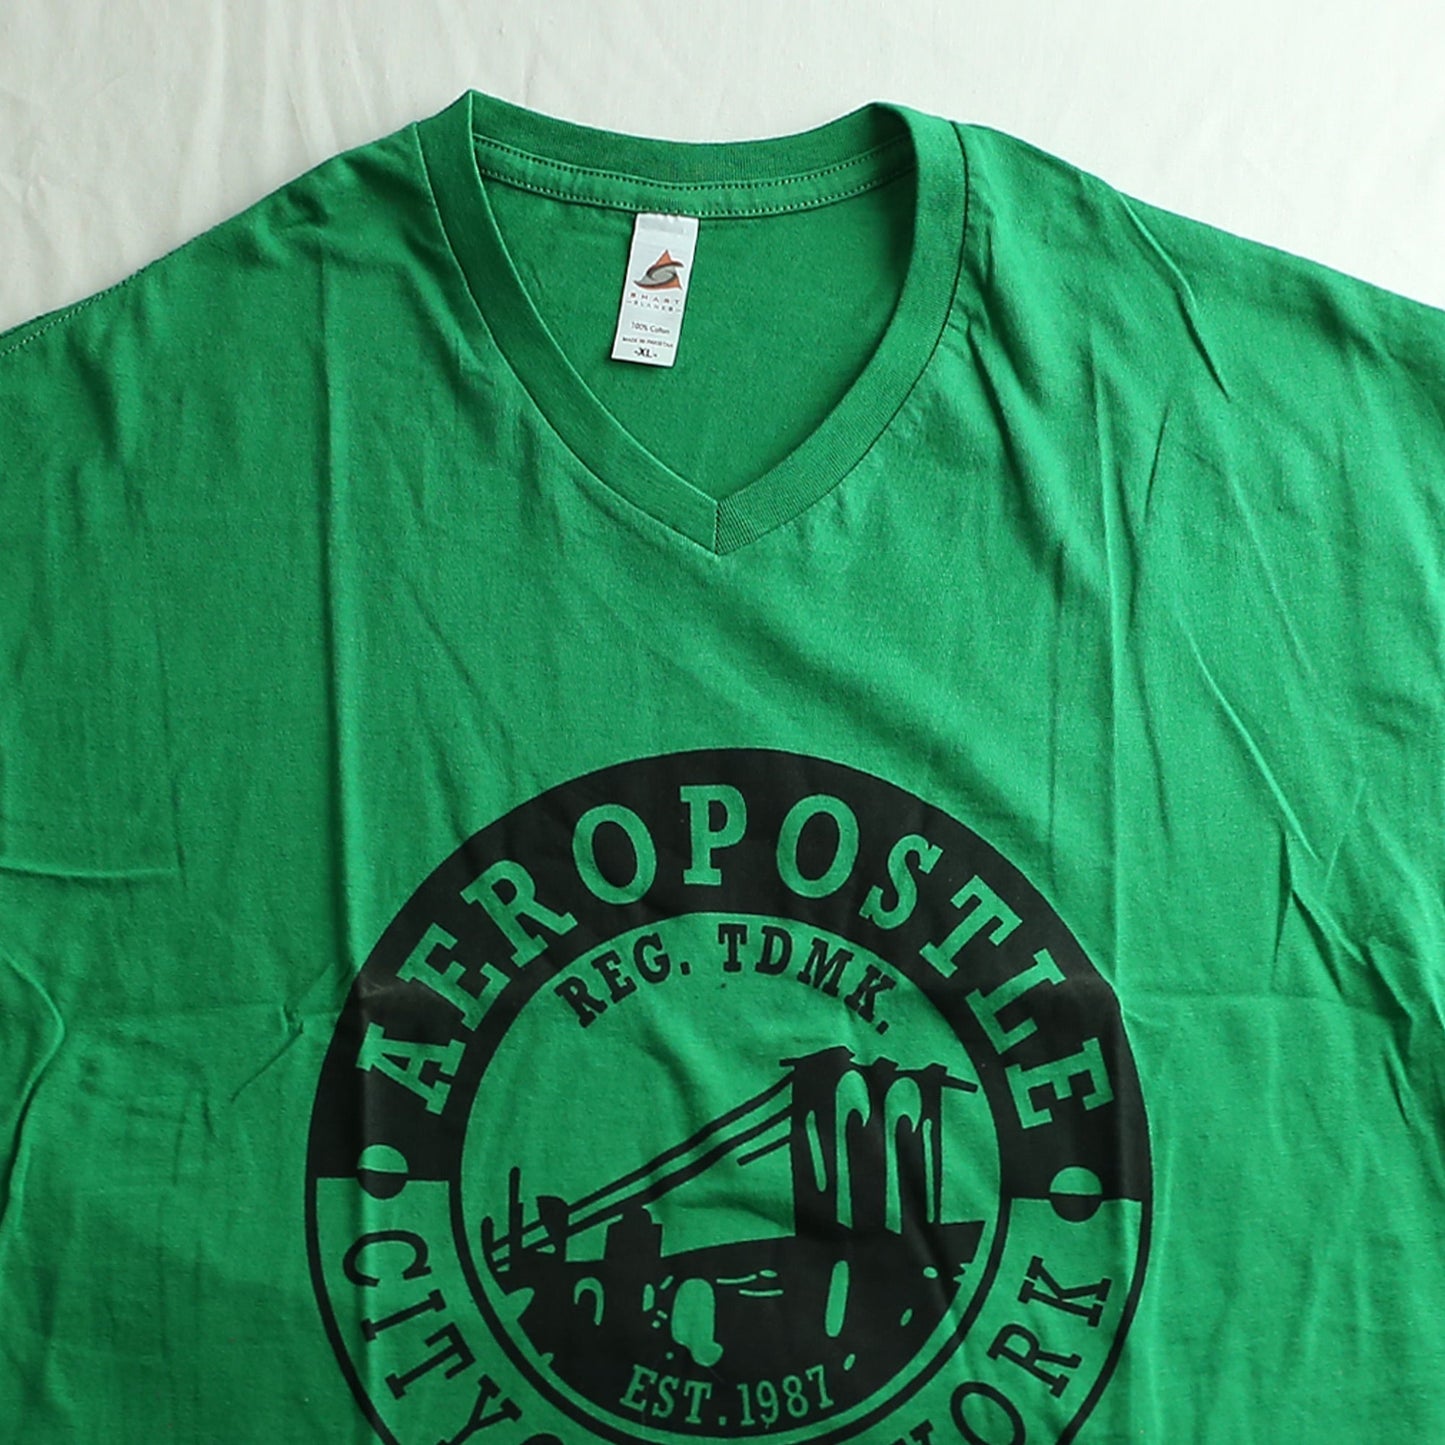 Smart Blanks V-Neck (Men) Emerald Green T-Shirt